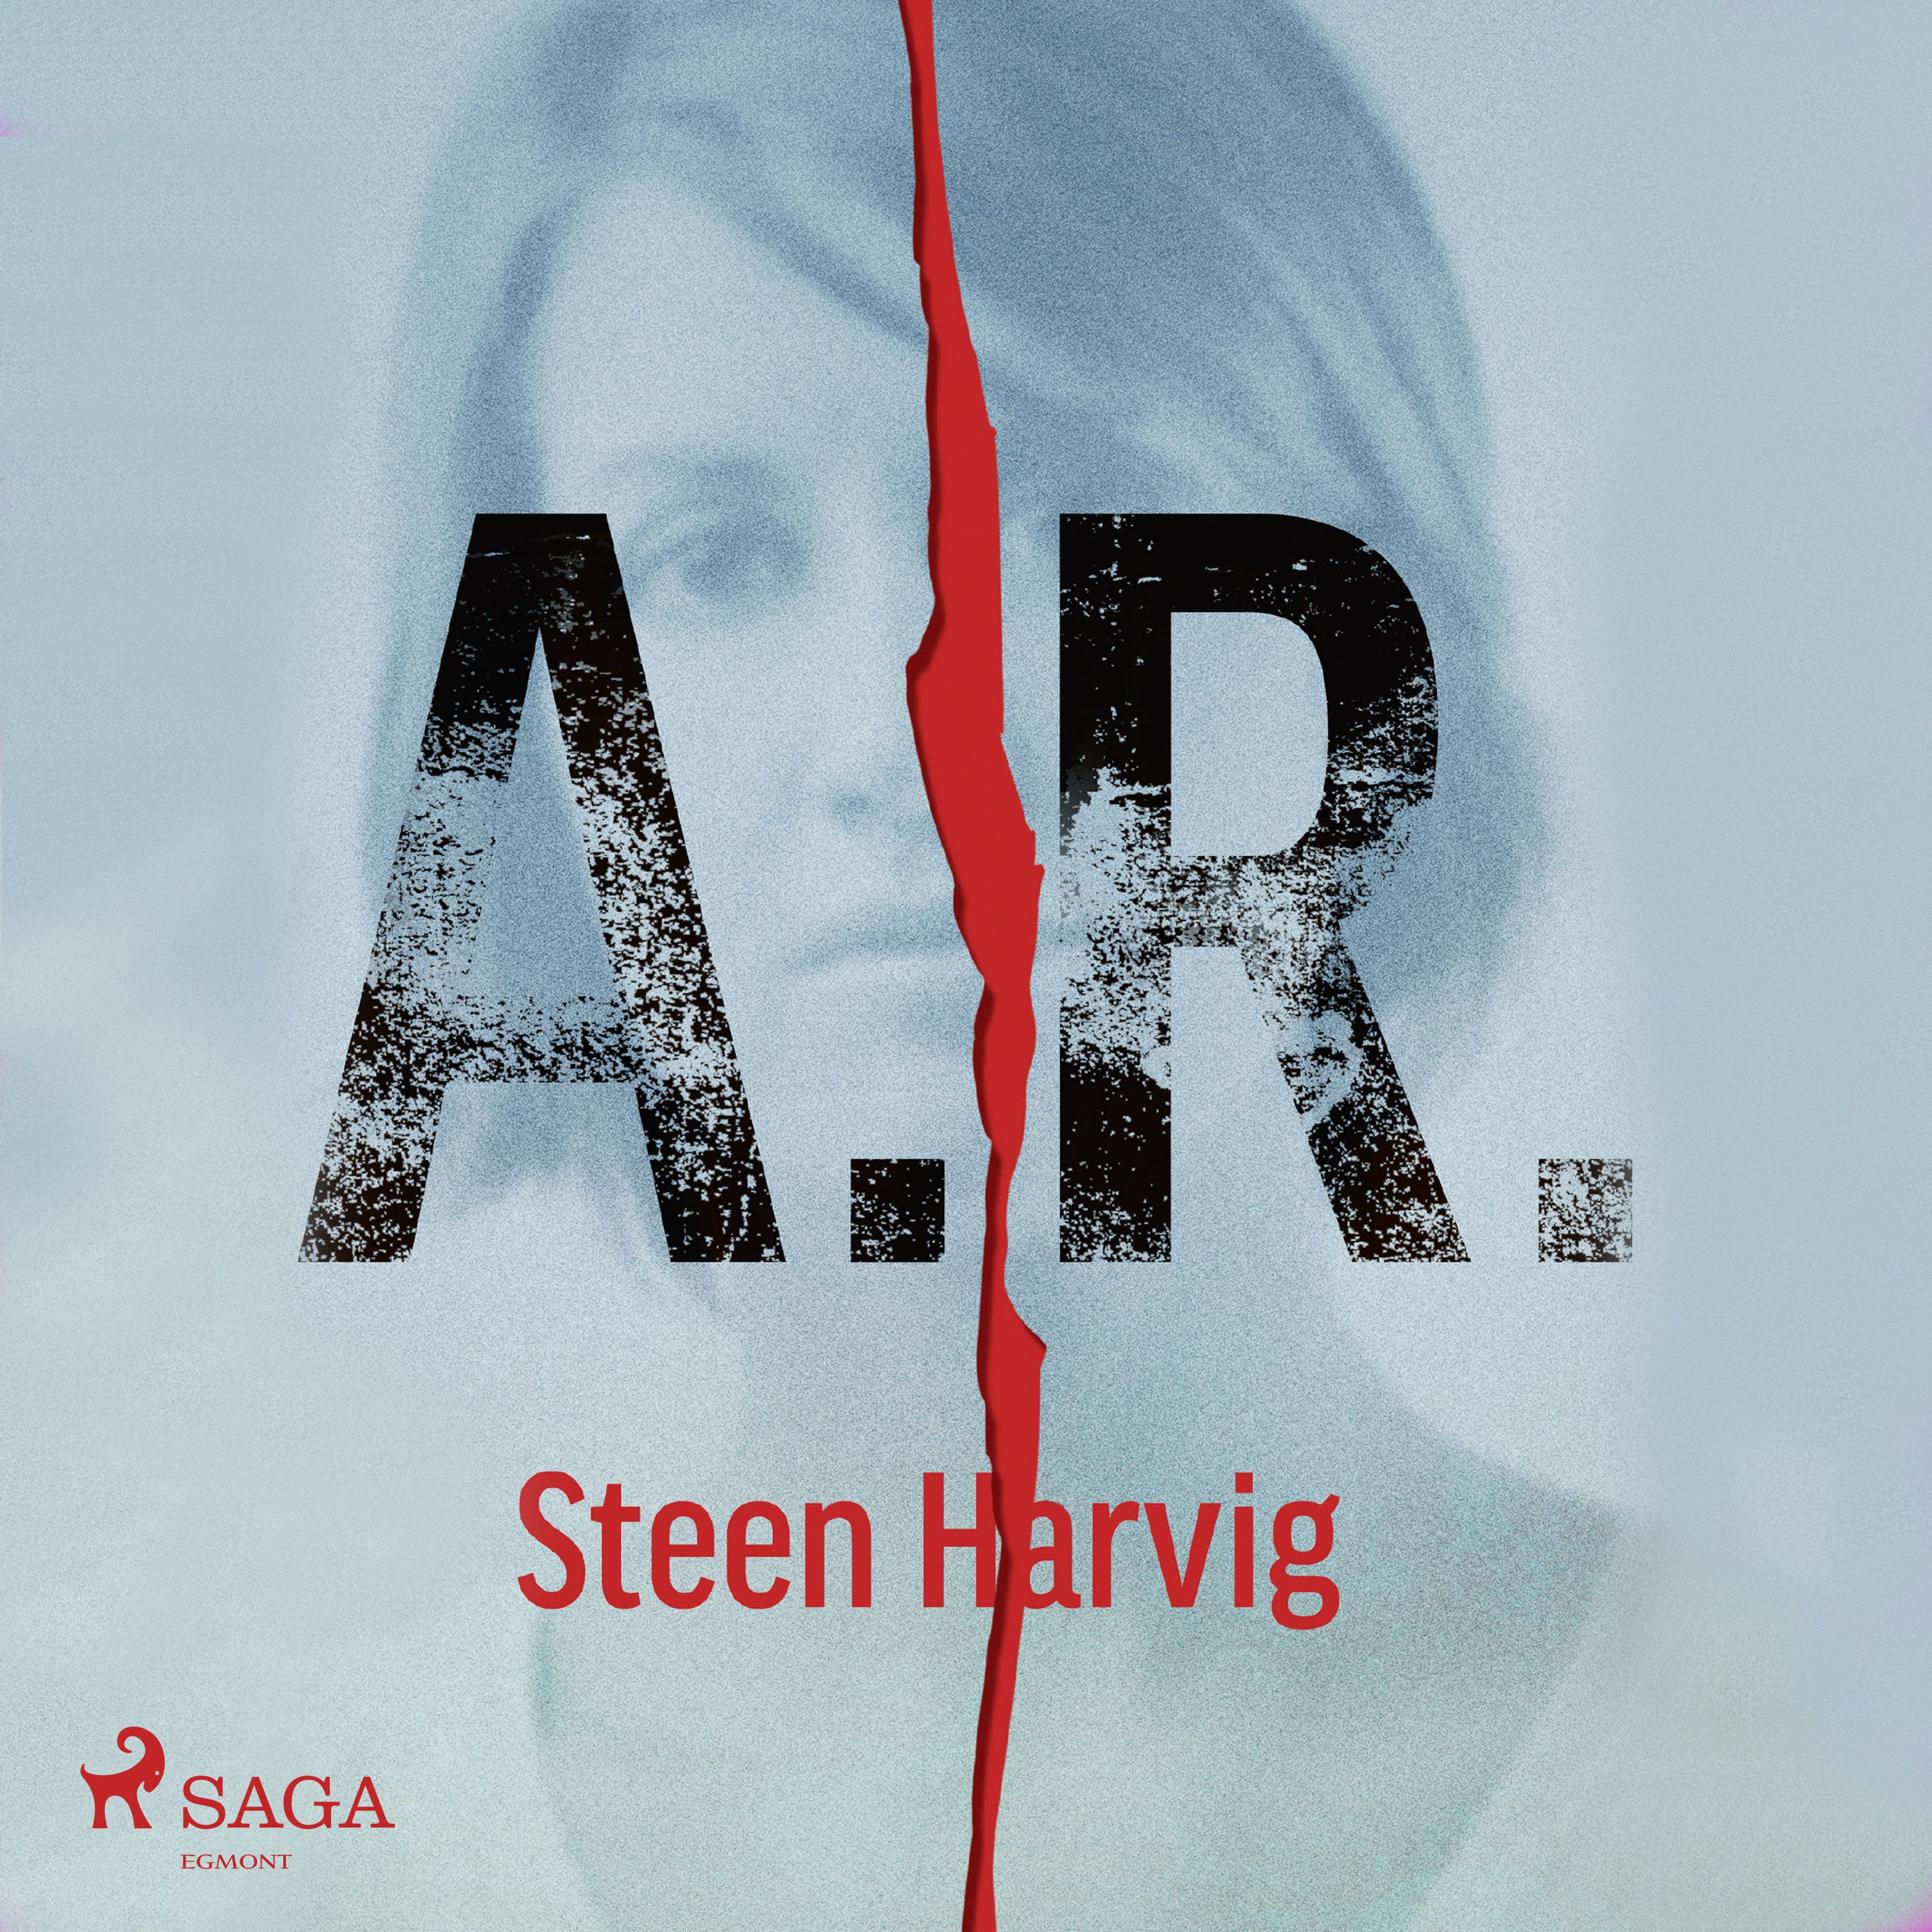 A.R., lydbog af Steen Harvig